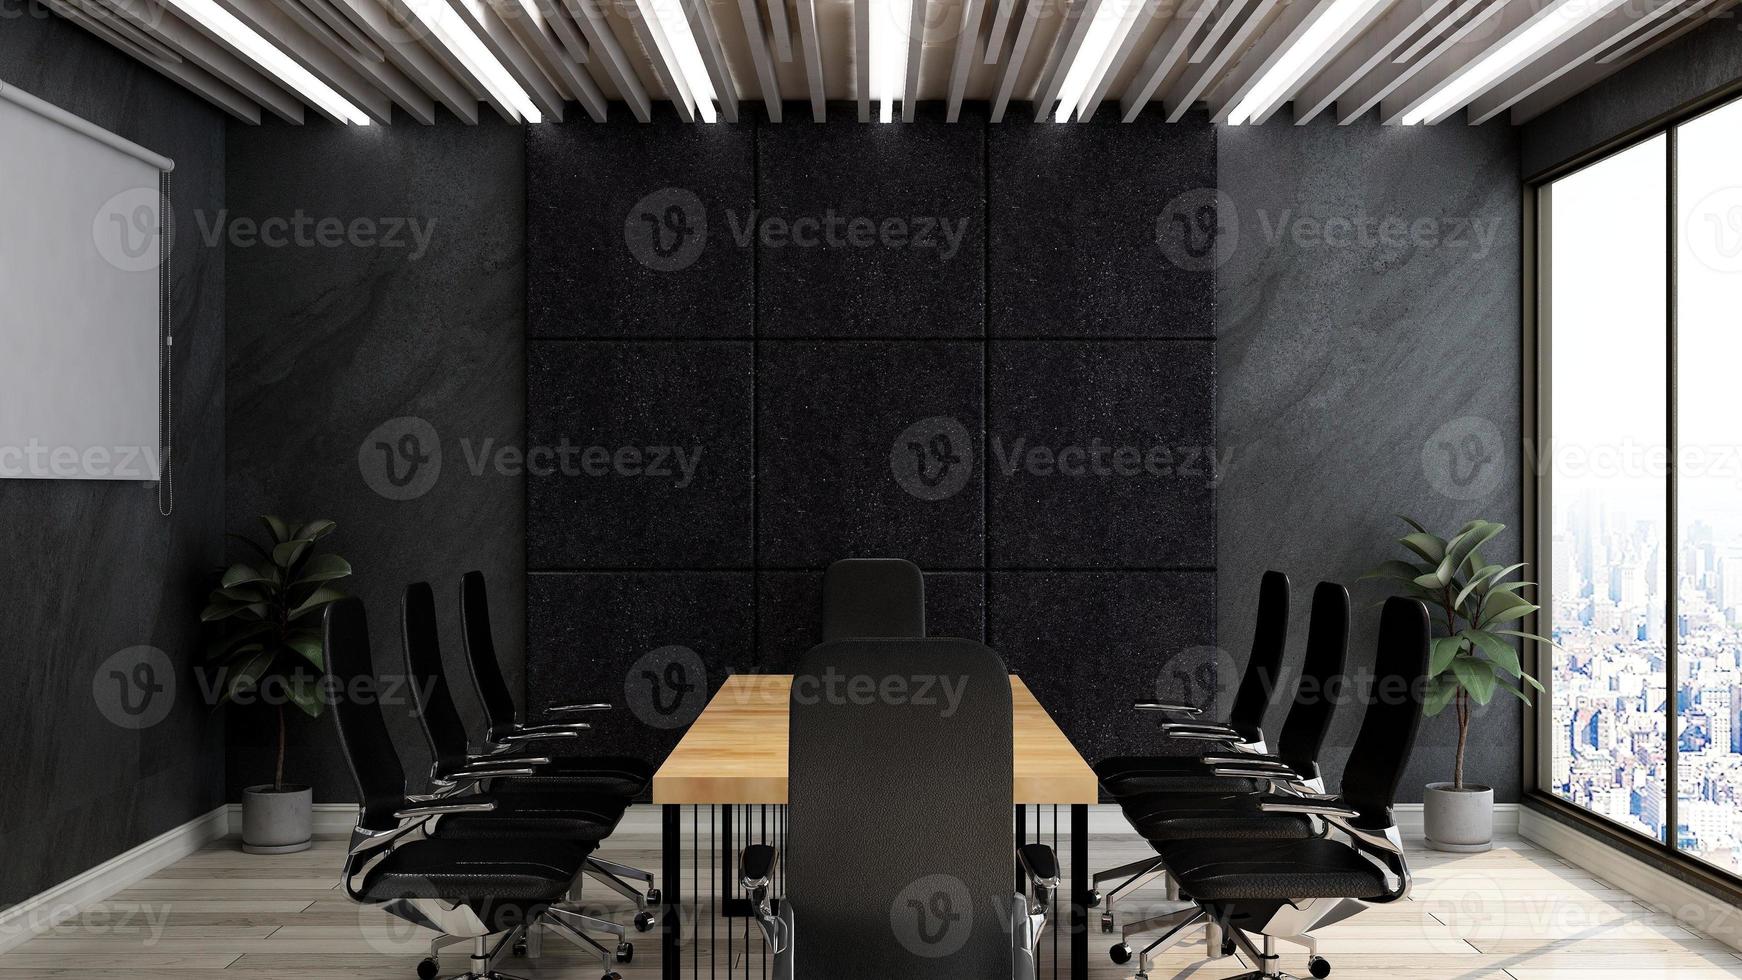 Maqueta de sala de reuniones moderna de espacio de trabajo de oficina de render 3d foto